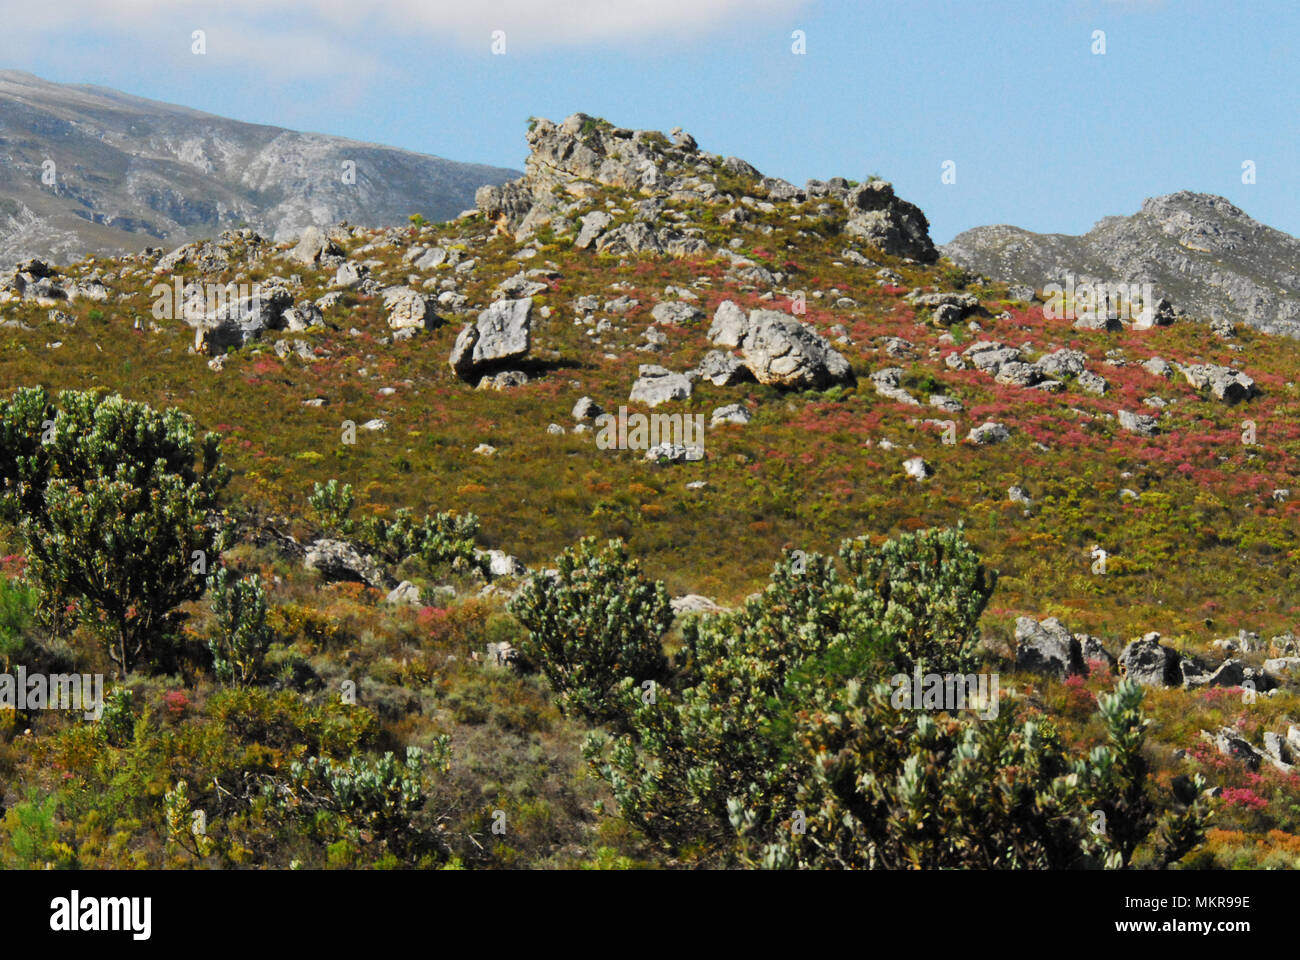 Ein wunderbar farbenfroher Hügel voller Fynbos und wilder Blumen. Stockfoto